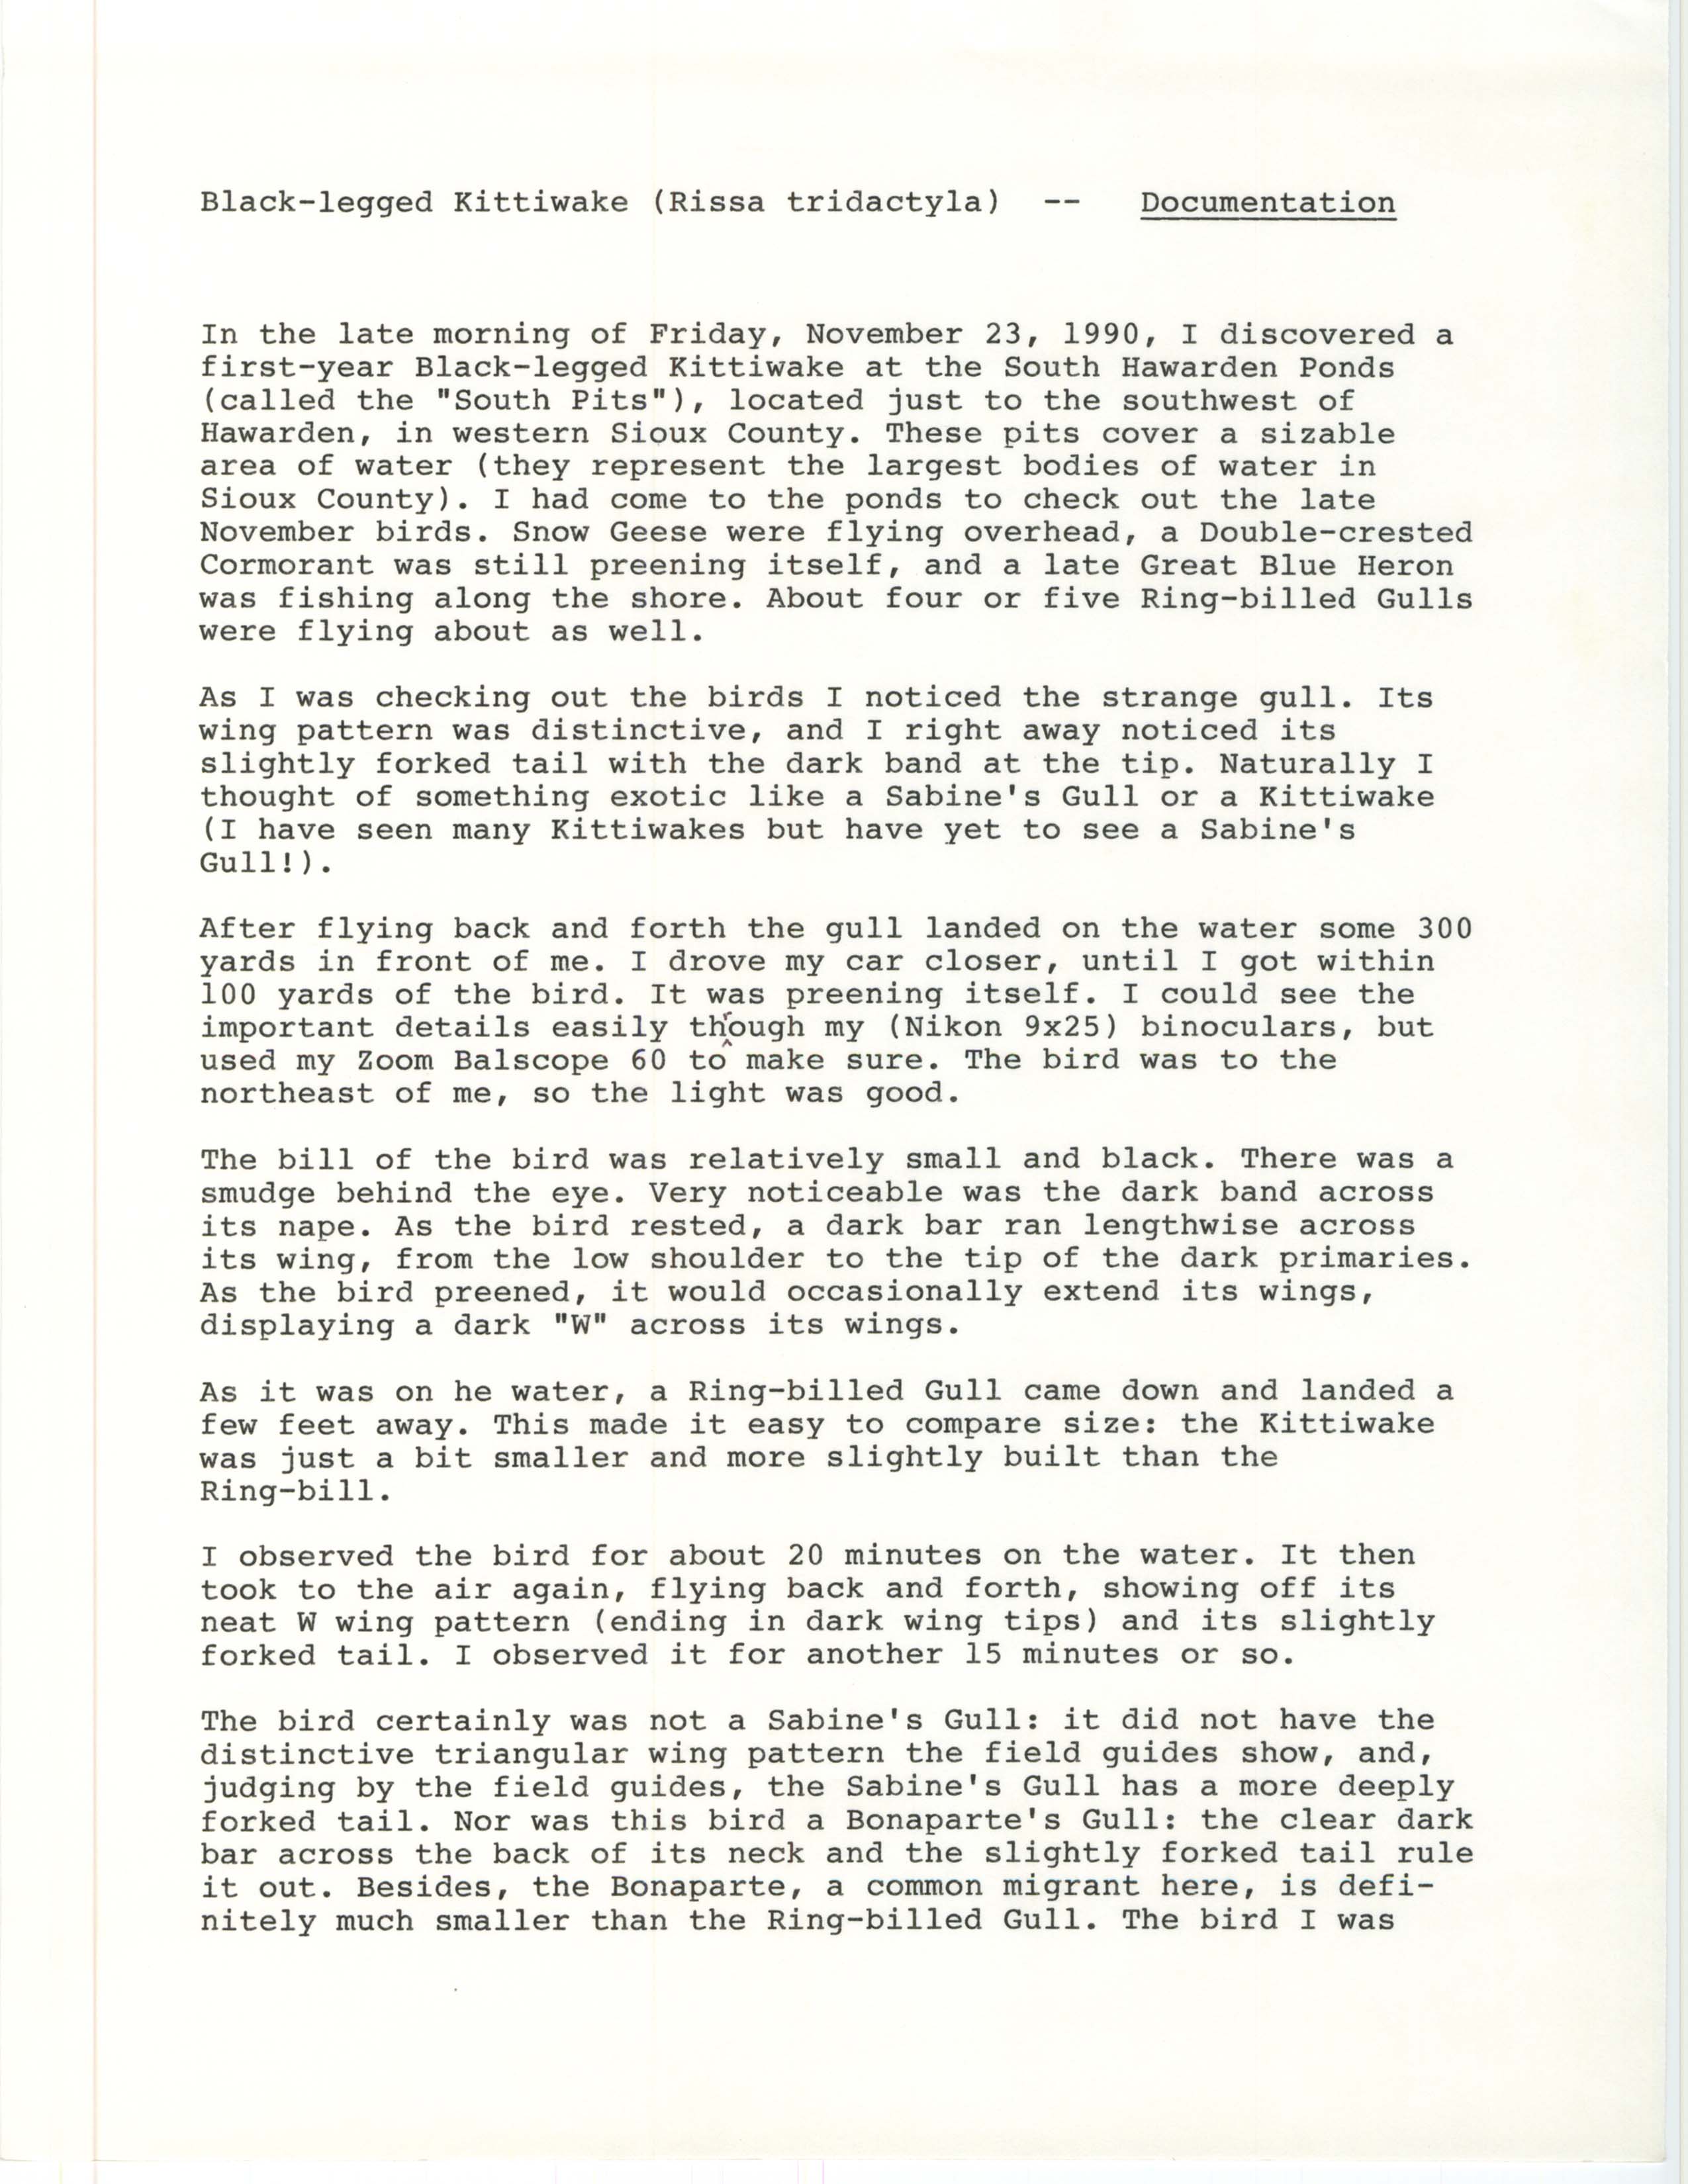 Black-legged Kittiwake (Rissa tridactyla) documentation, November 23, 1990